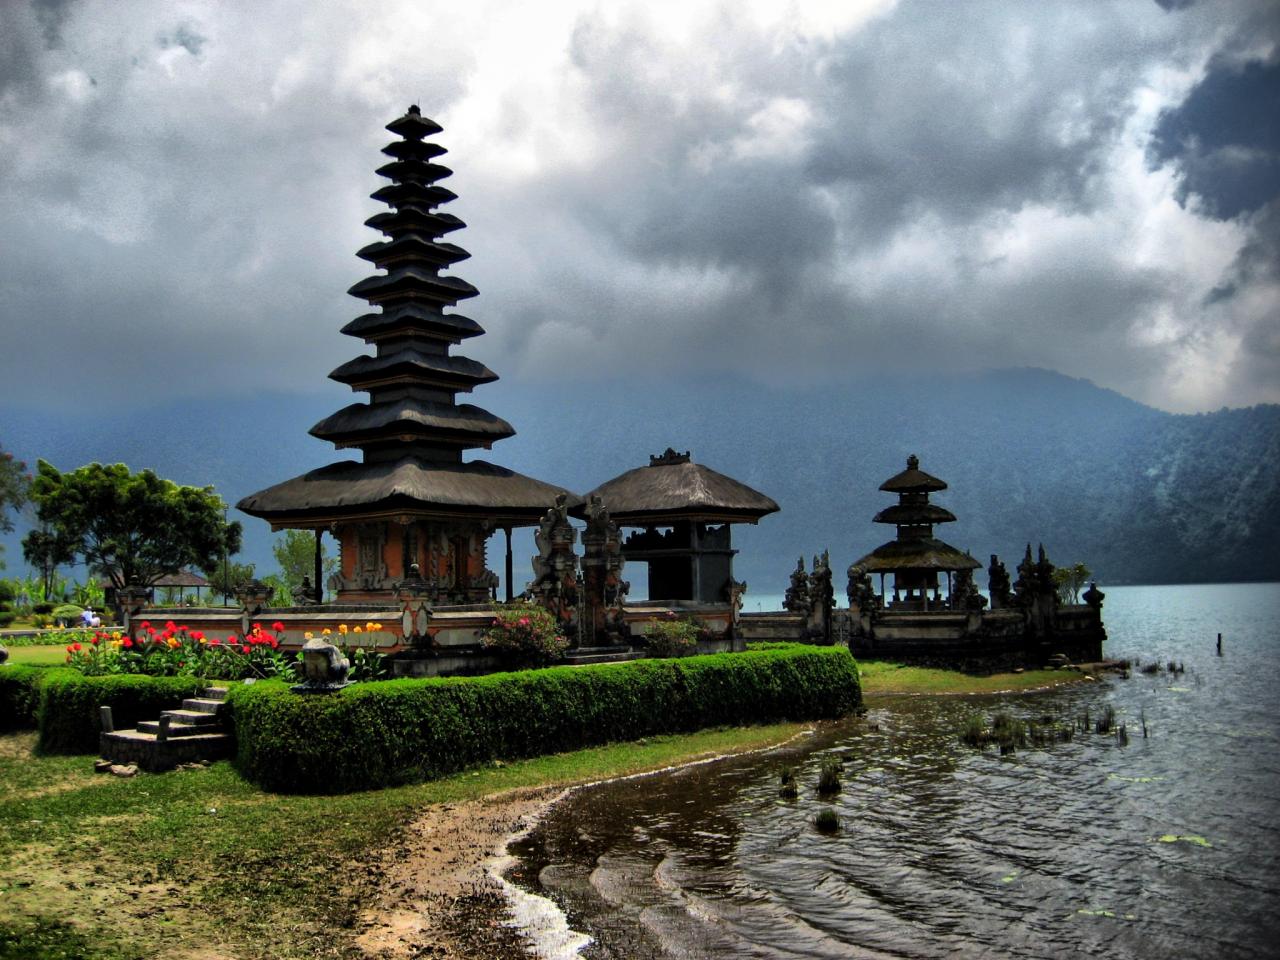 السياحة فى إندونيسيا وأفضل الأماكن السياحية وأفضل وقت لزيارة إندونيسيا